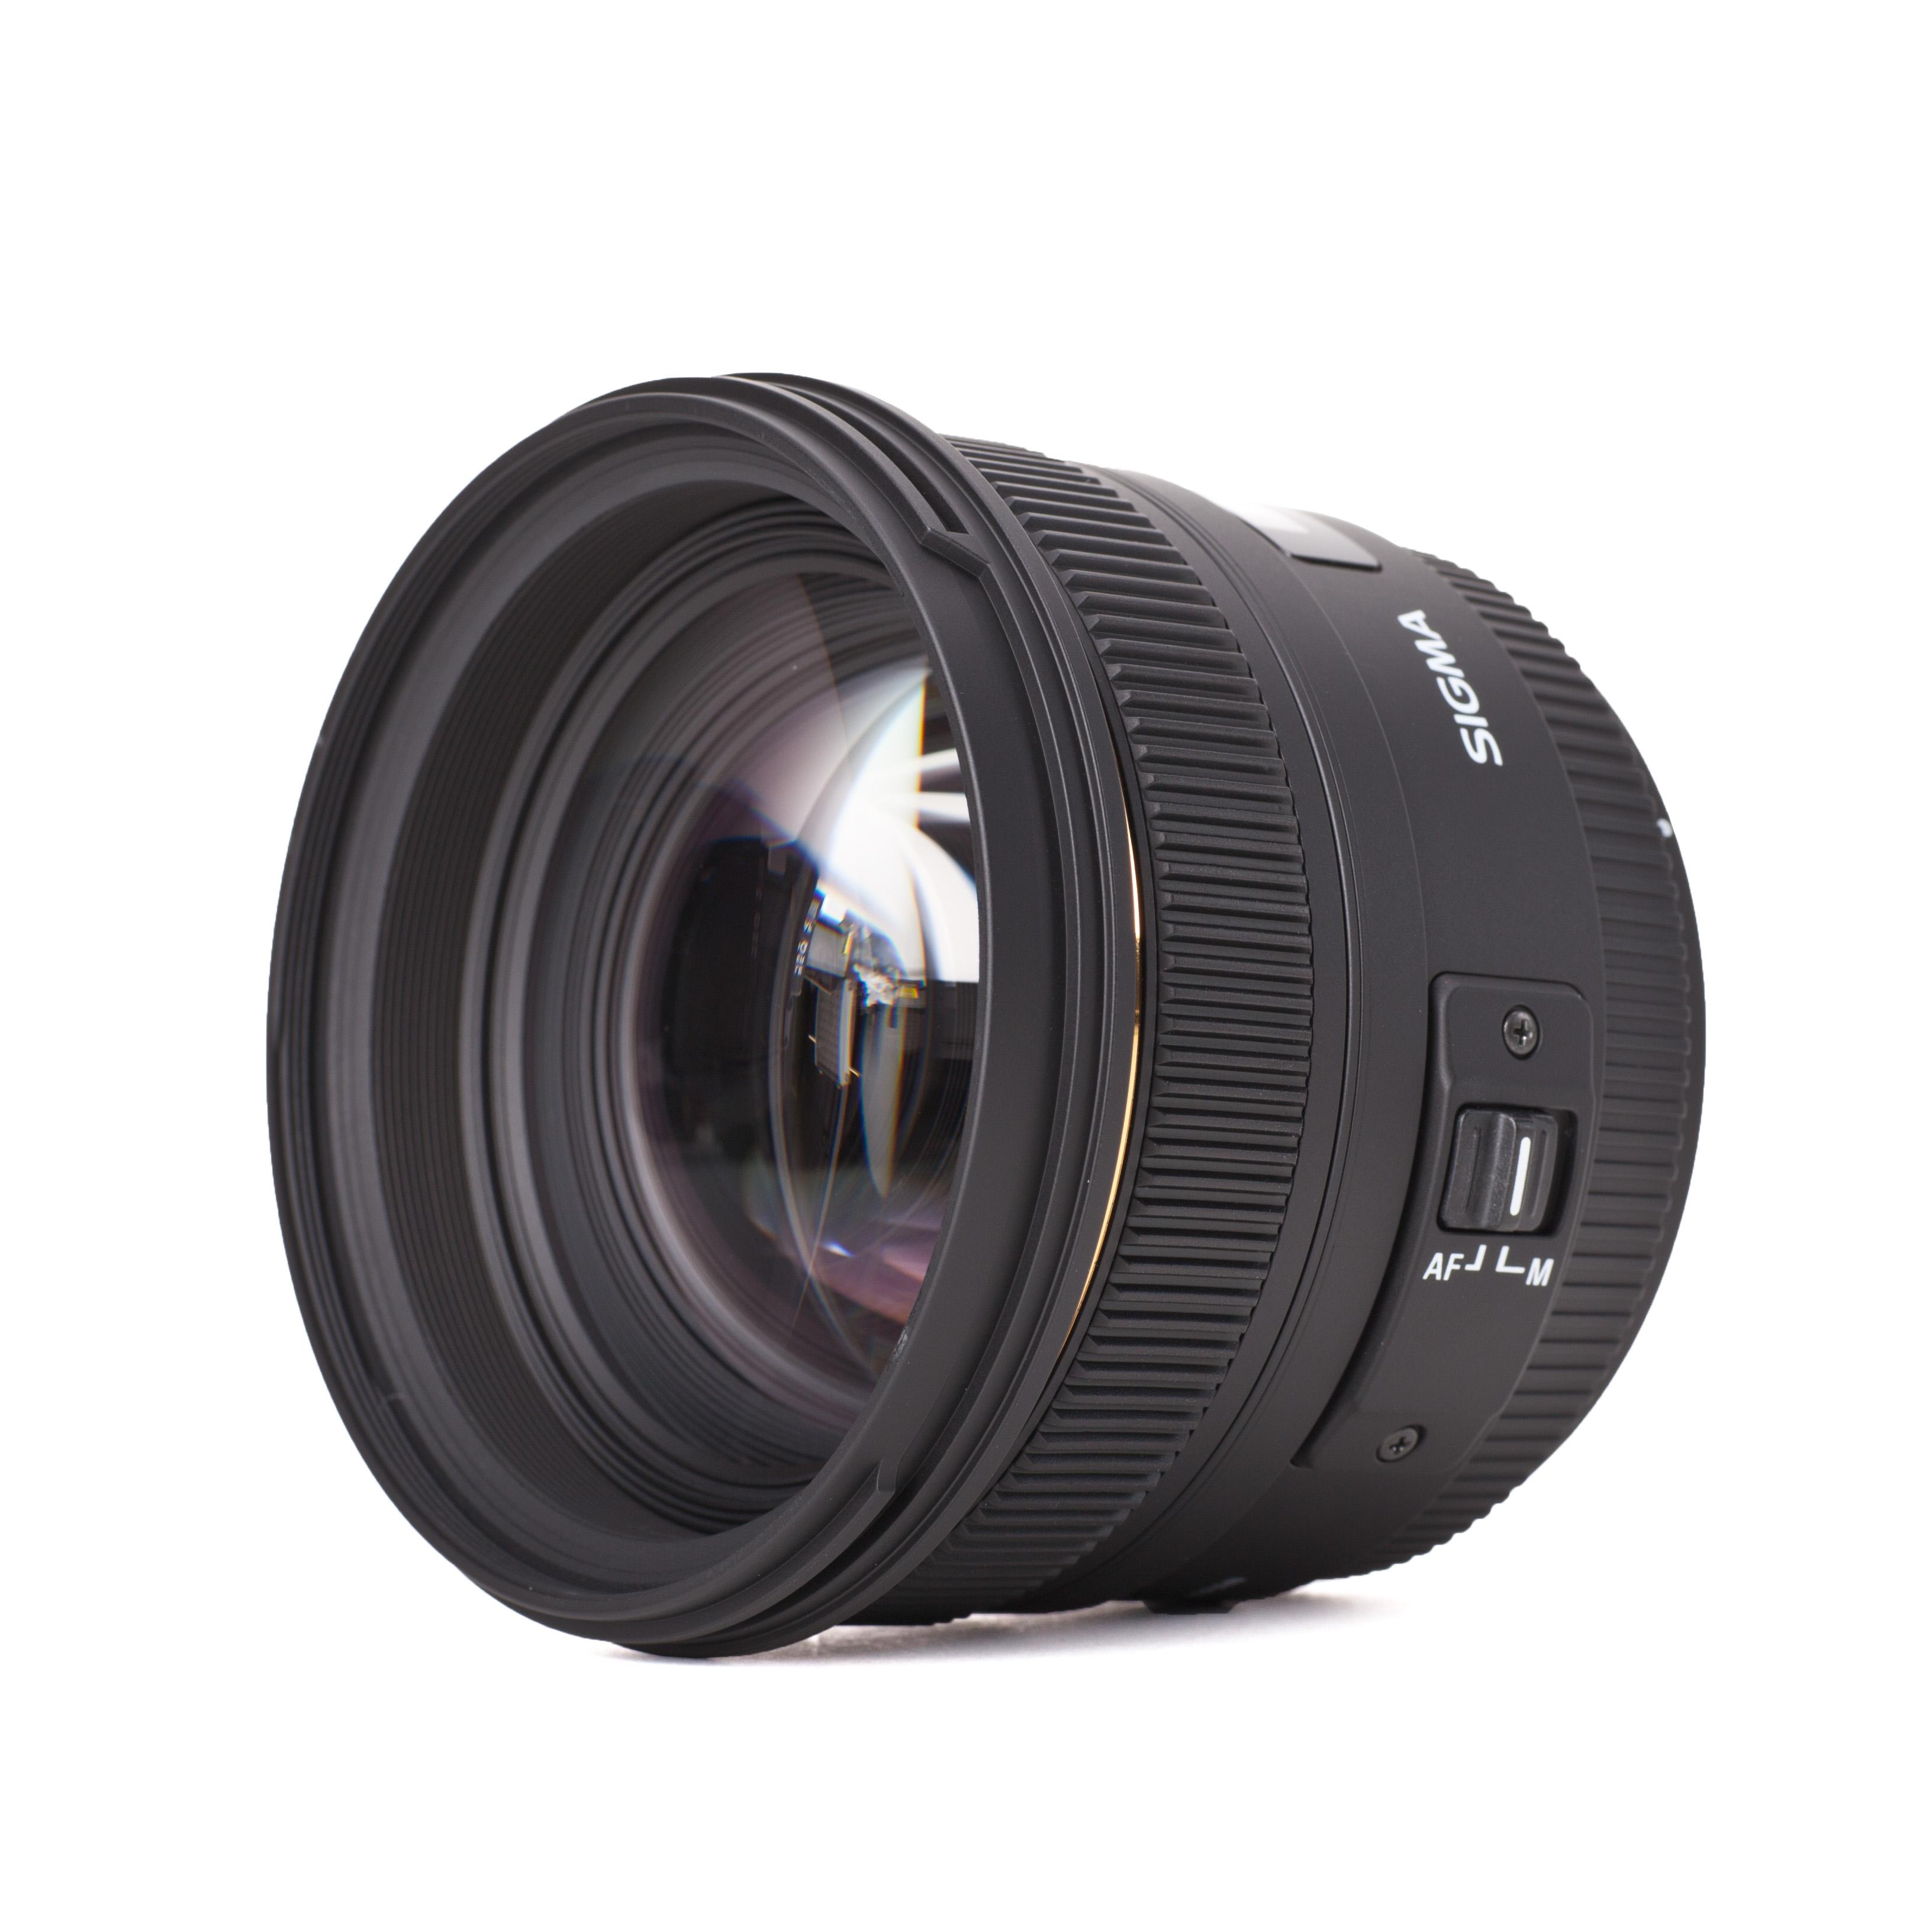 Objectif Sigma 50mm f1.4 EX DG HSM 50mm pour Nikon